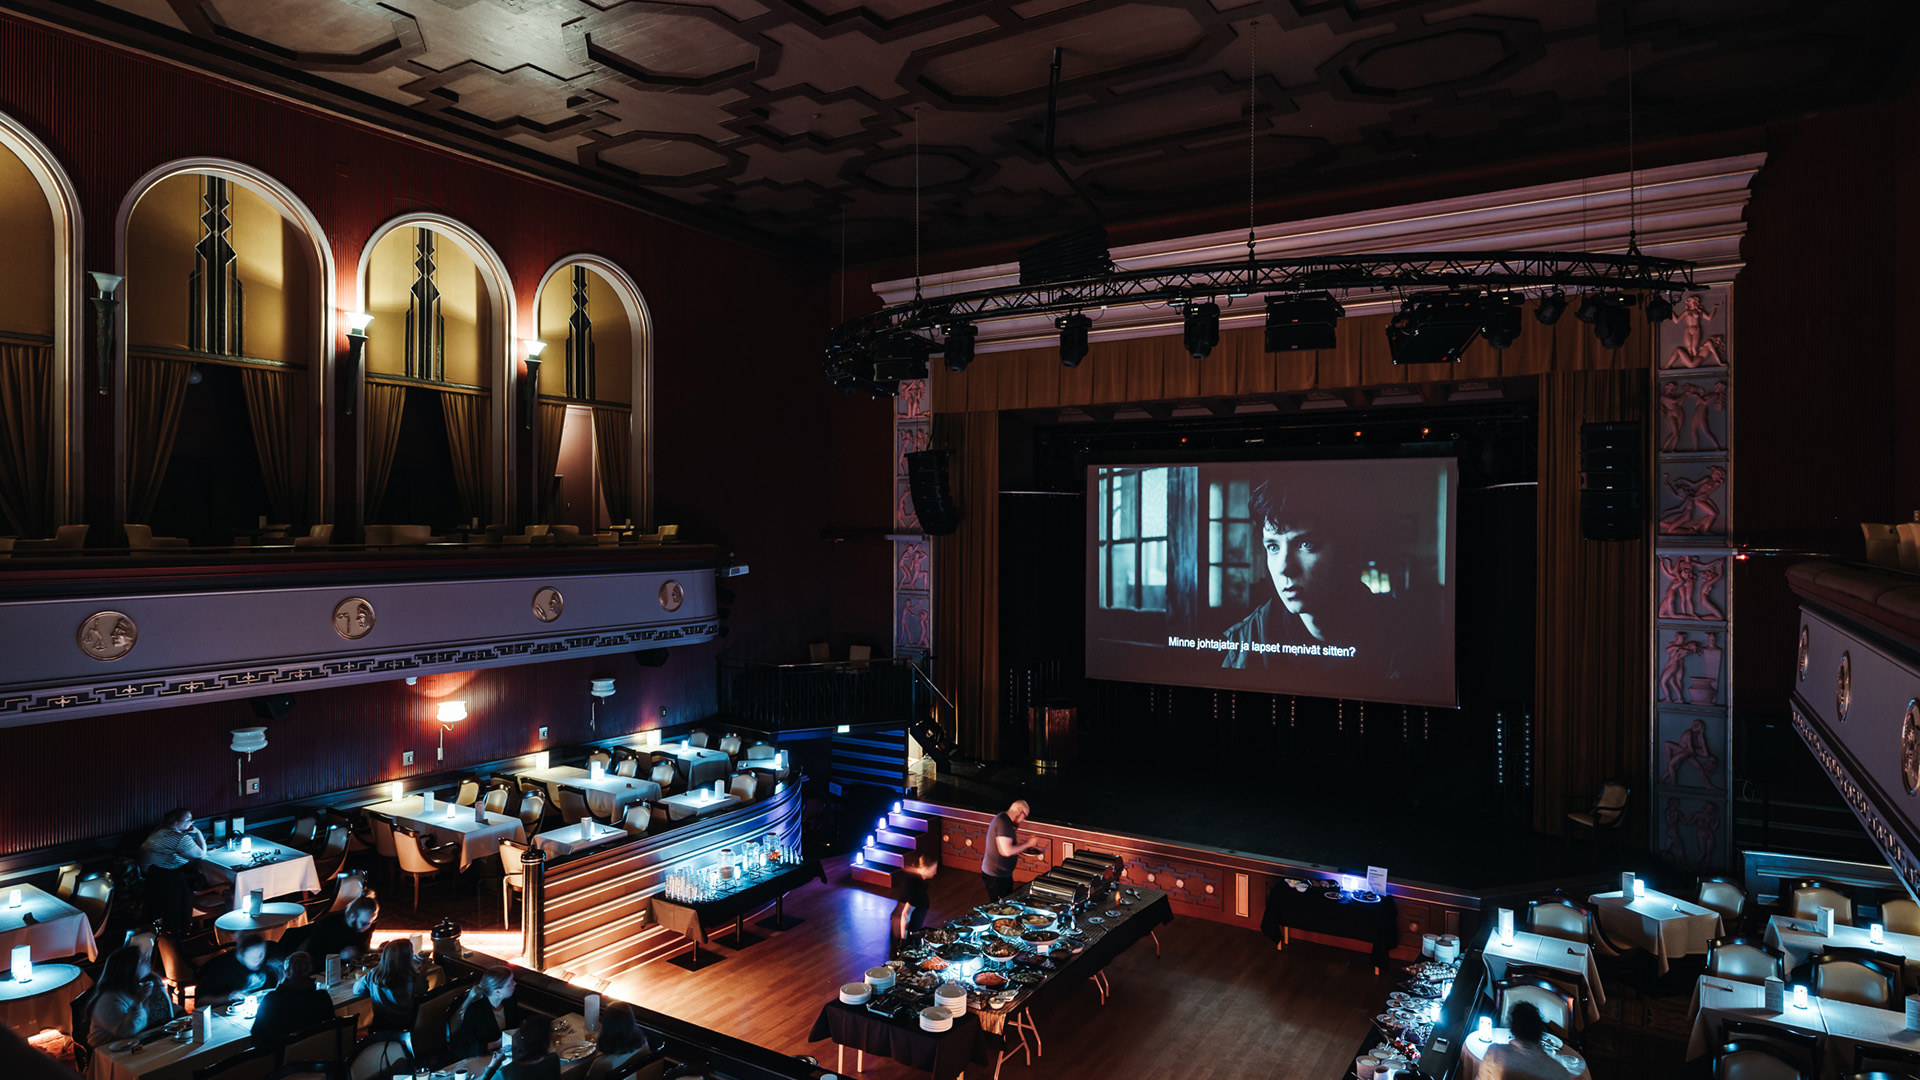 Tuulensuun Palatsin pääasali, jonka lavalle kankaalle heijastettu elokuva ja ihmisiä hakemassa salin keskeltä olevasta noutopöydästä syötävää.